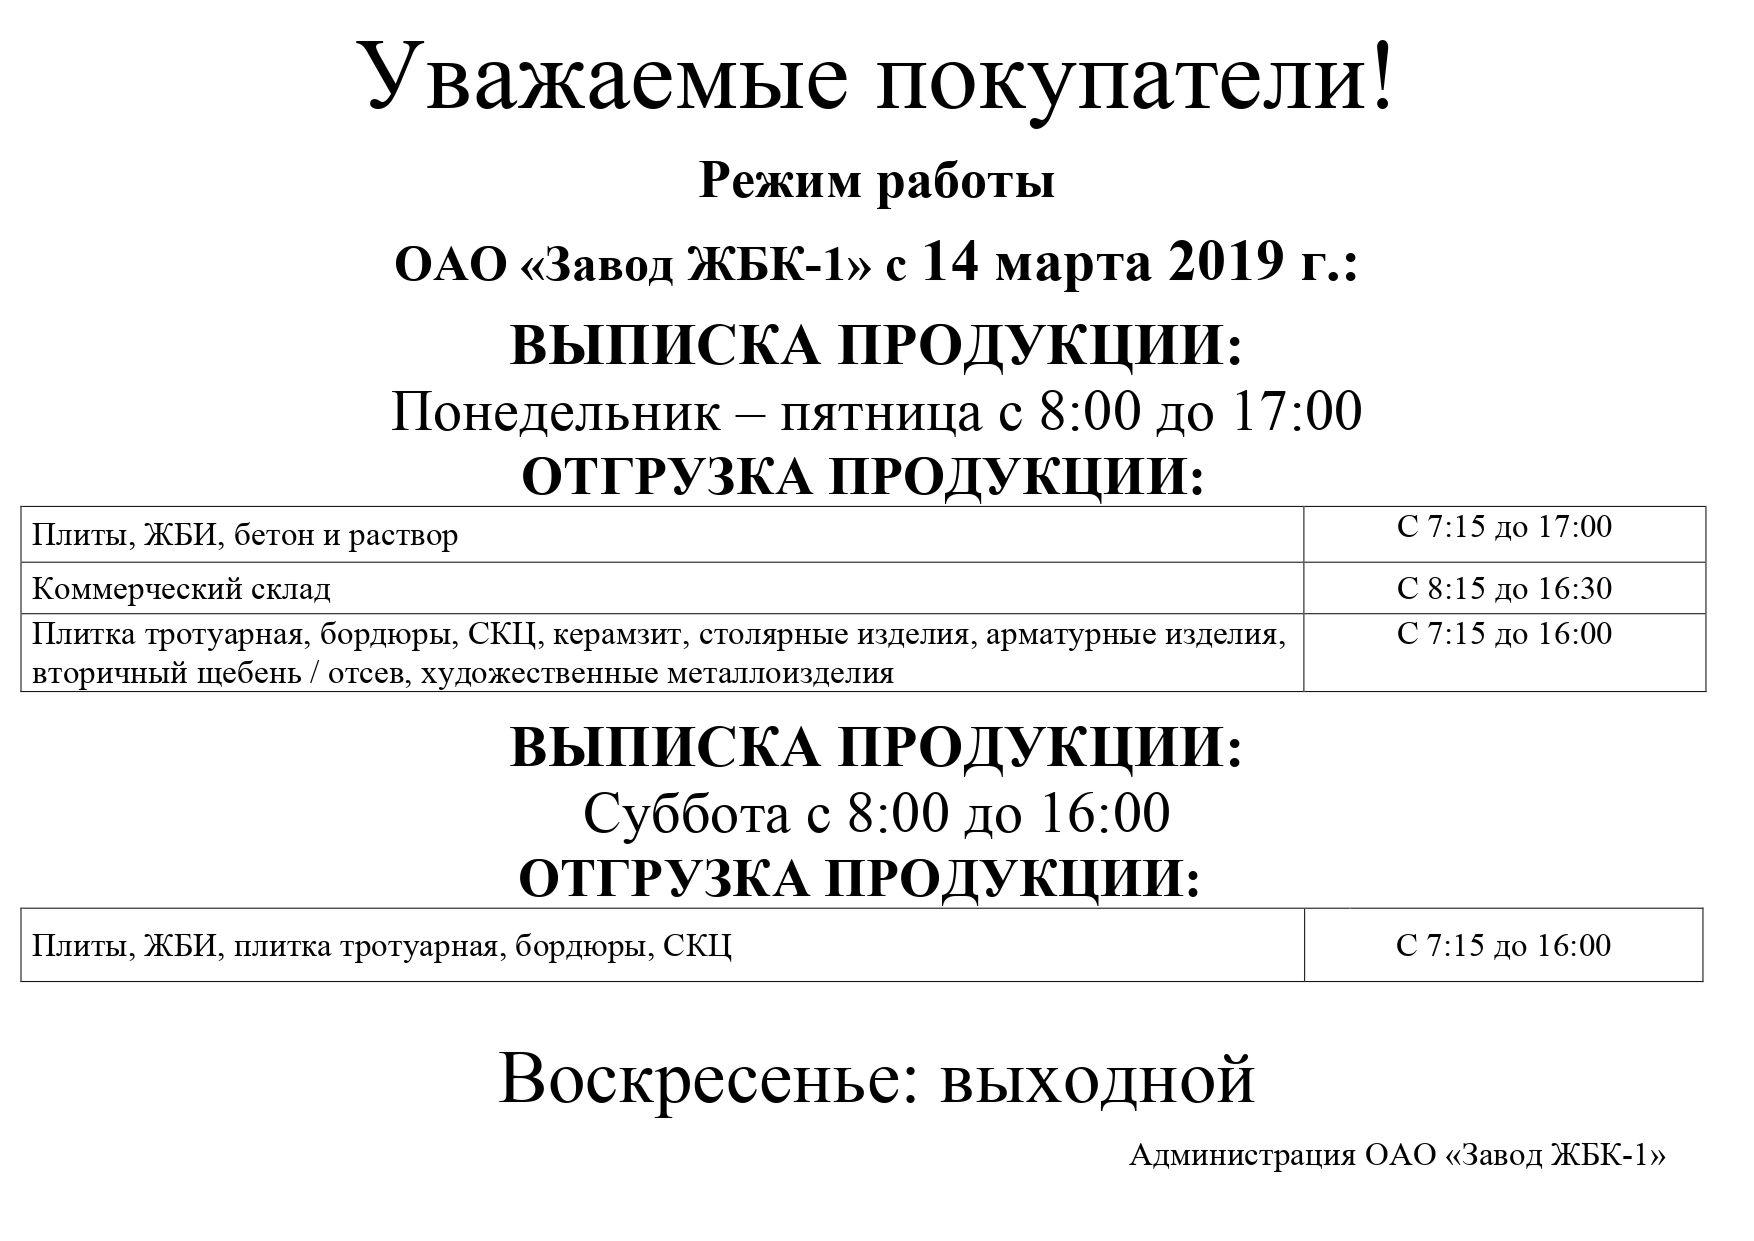 Режим работы ОАО "Завод ЖБК - 1"  с 14 марта 2019